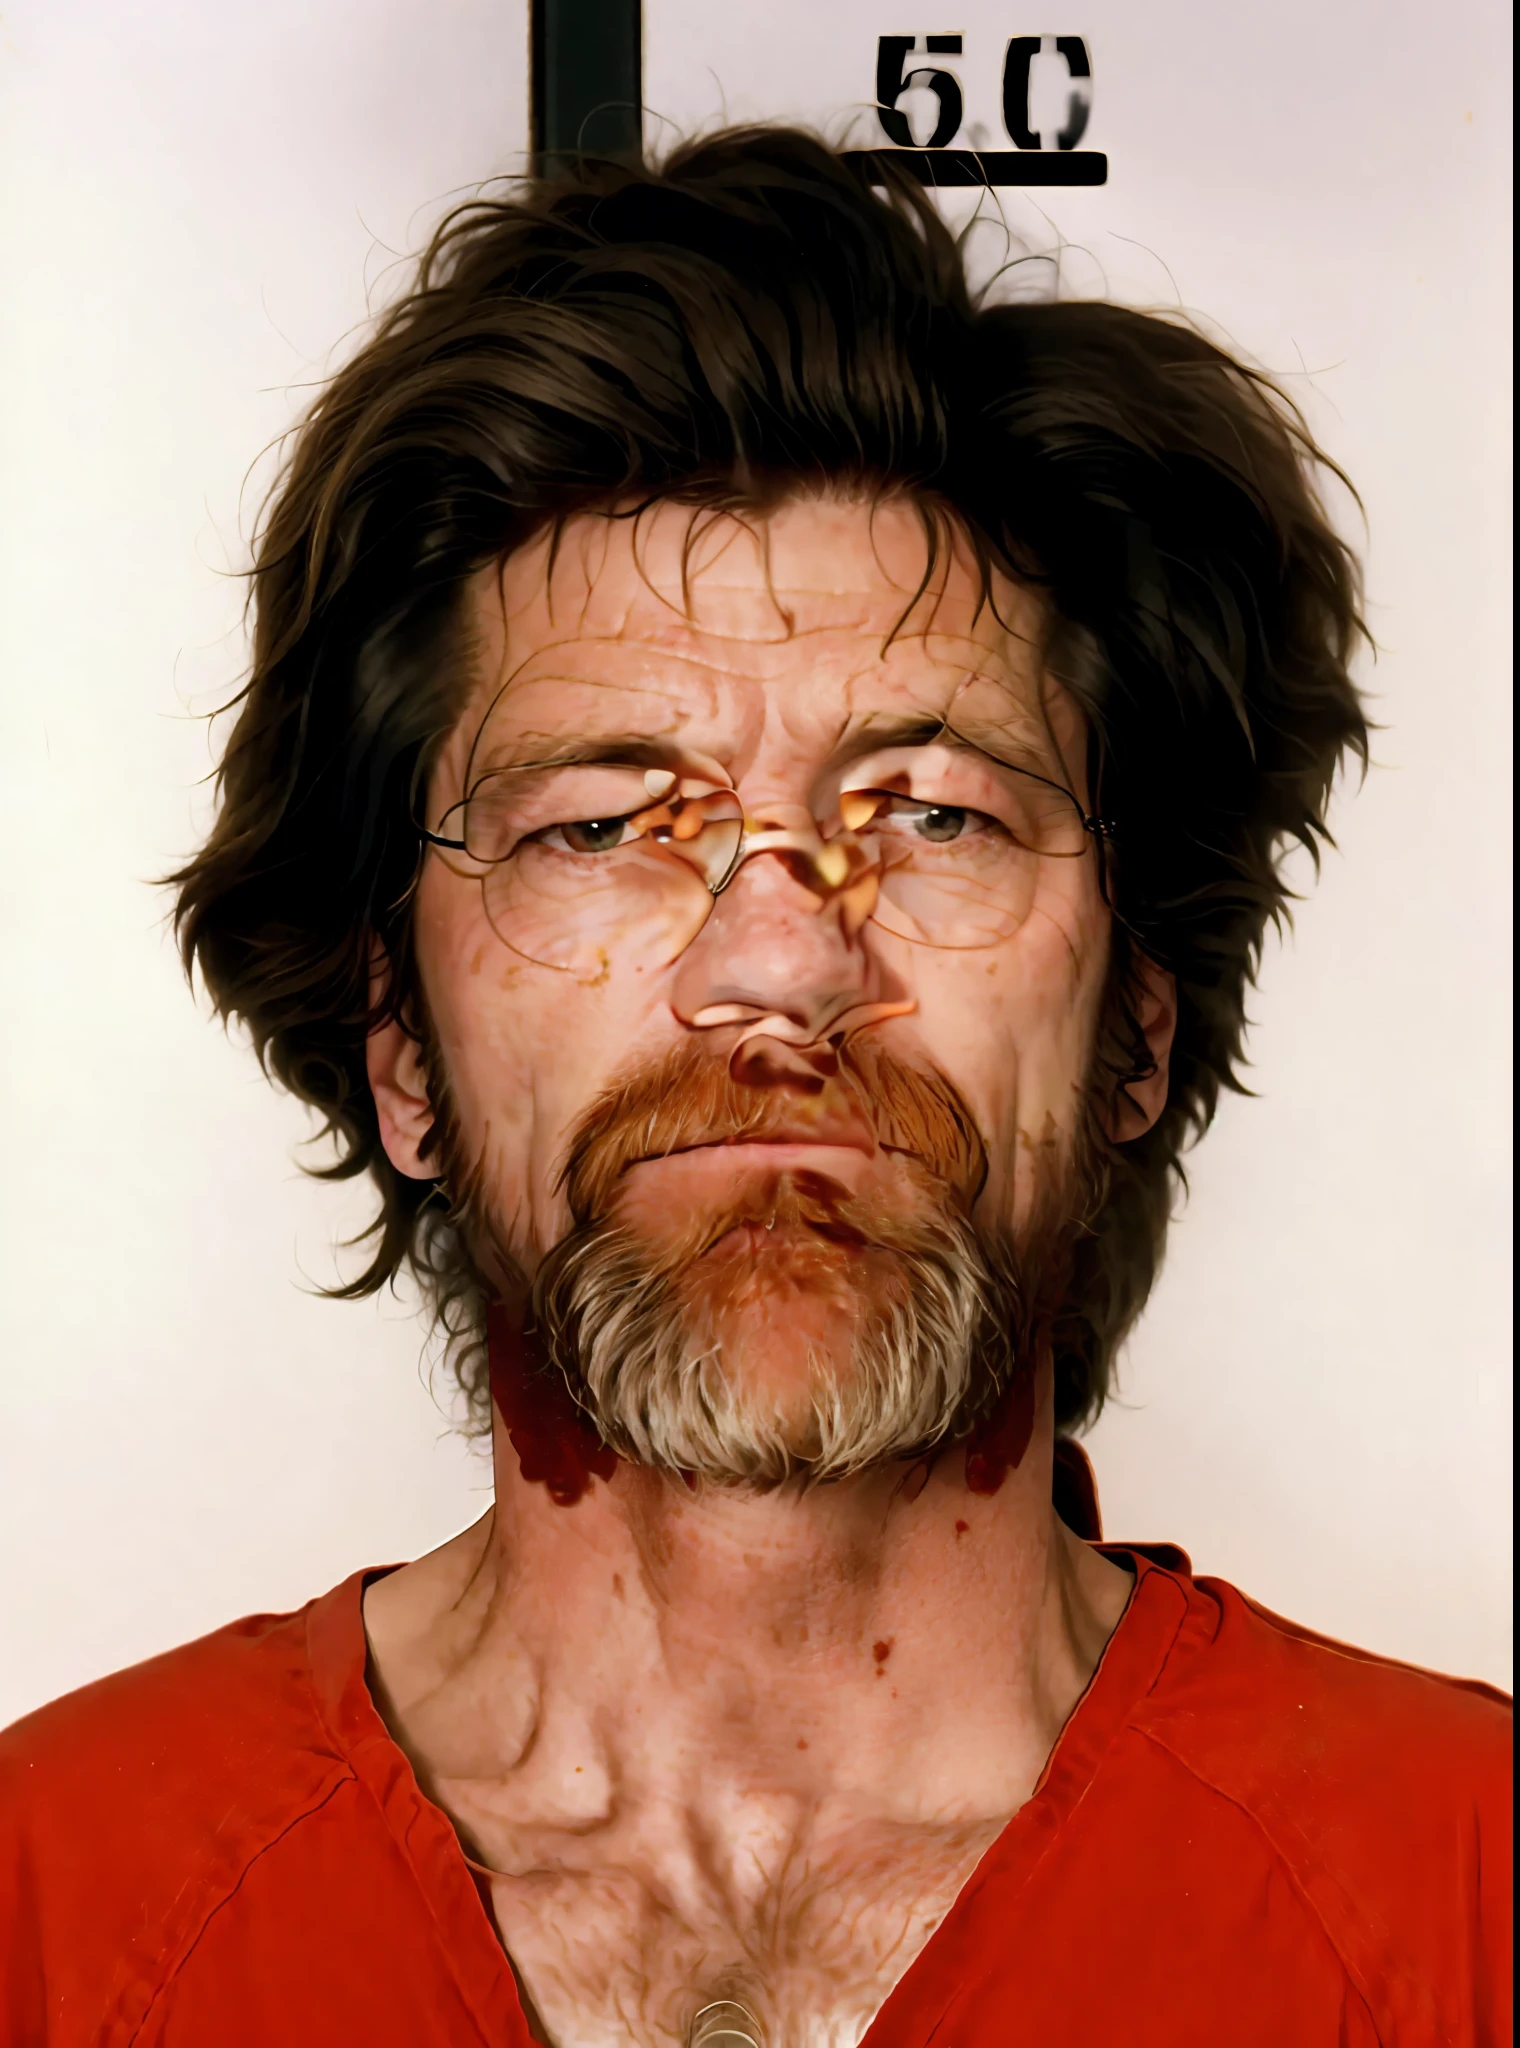 realista, Homem com barba e camisa vermelha na foto da caneca, foto de um homem branco de 50 anos, foto de um homem peludo, Theodoro John Kaczynski, o homem mais assustador do mundo, tirada no início da década de 1990, Vladimir Krisetskiy, Willem Dafoe, foto granulada de um homem feio, Unabomber